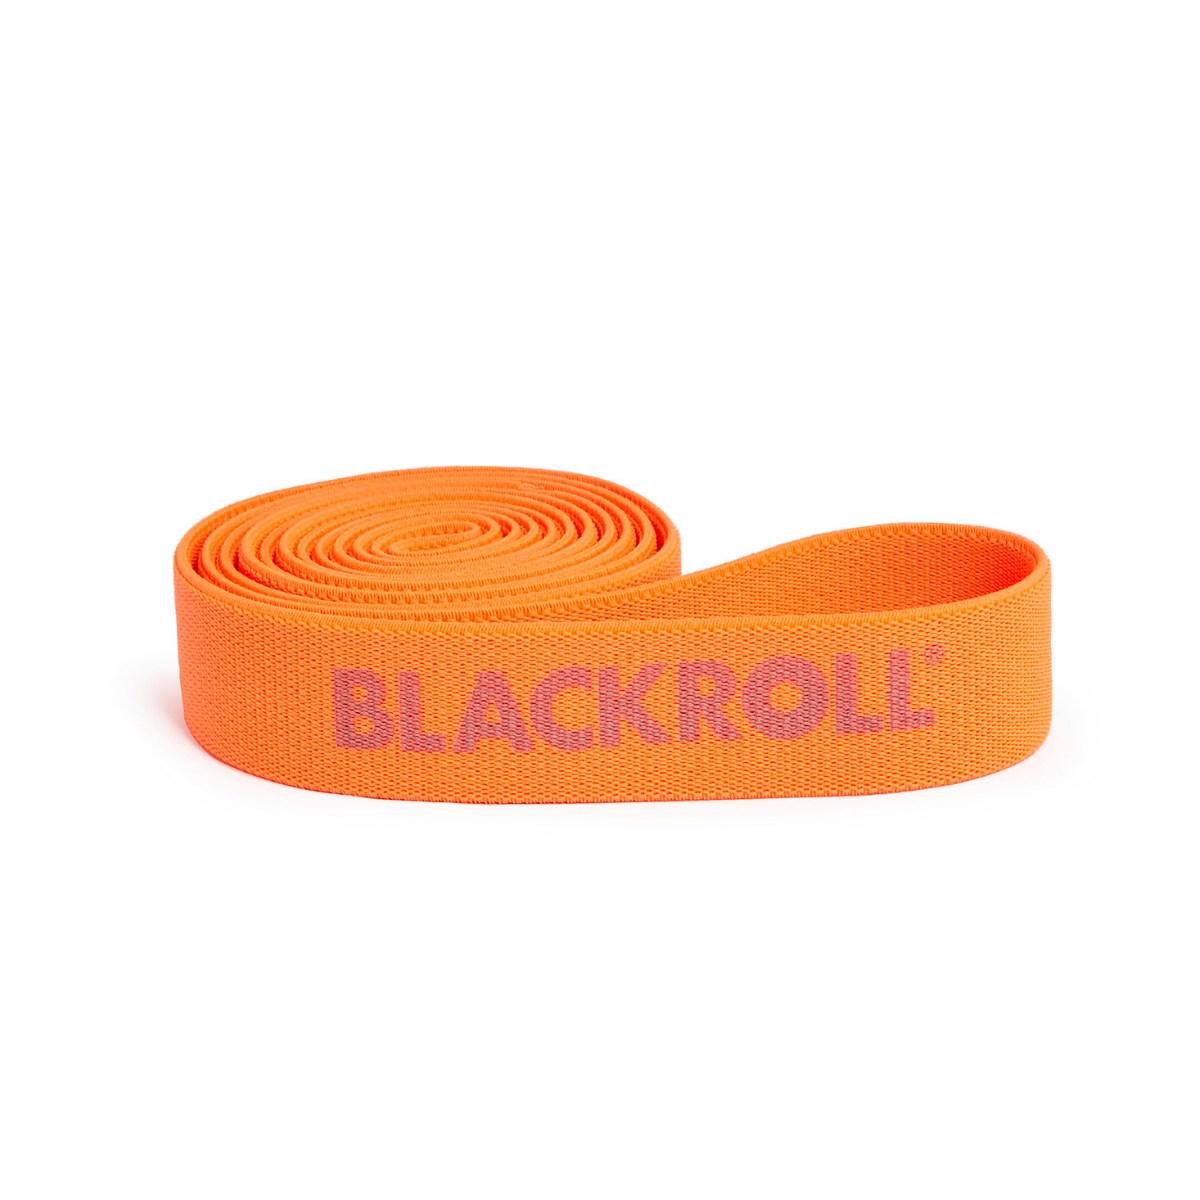 Blackroll SUPER BAND banda elastica per esercizi fitness Arancio